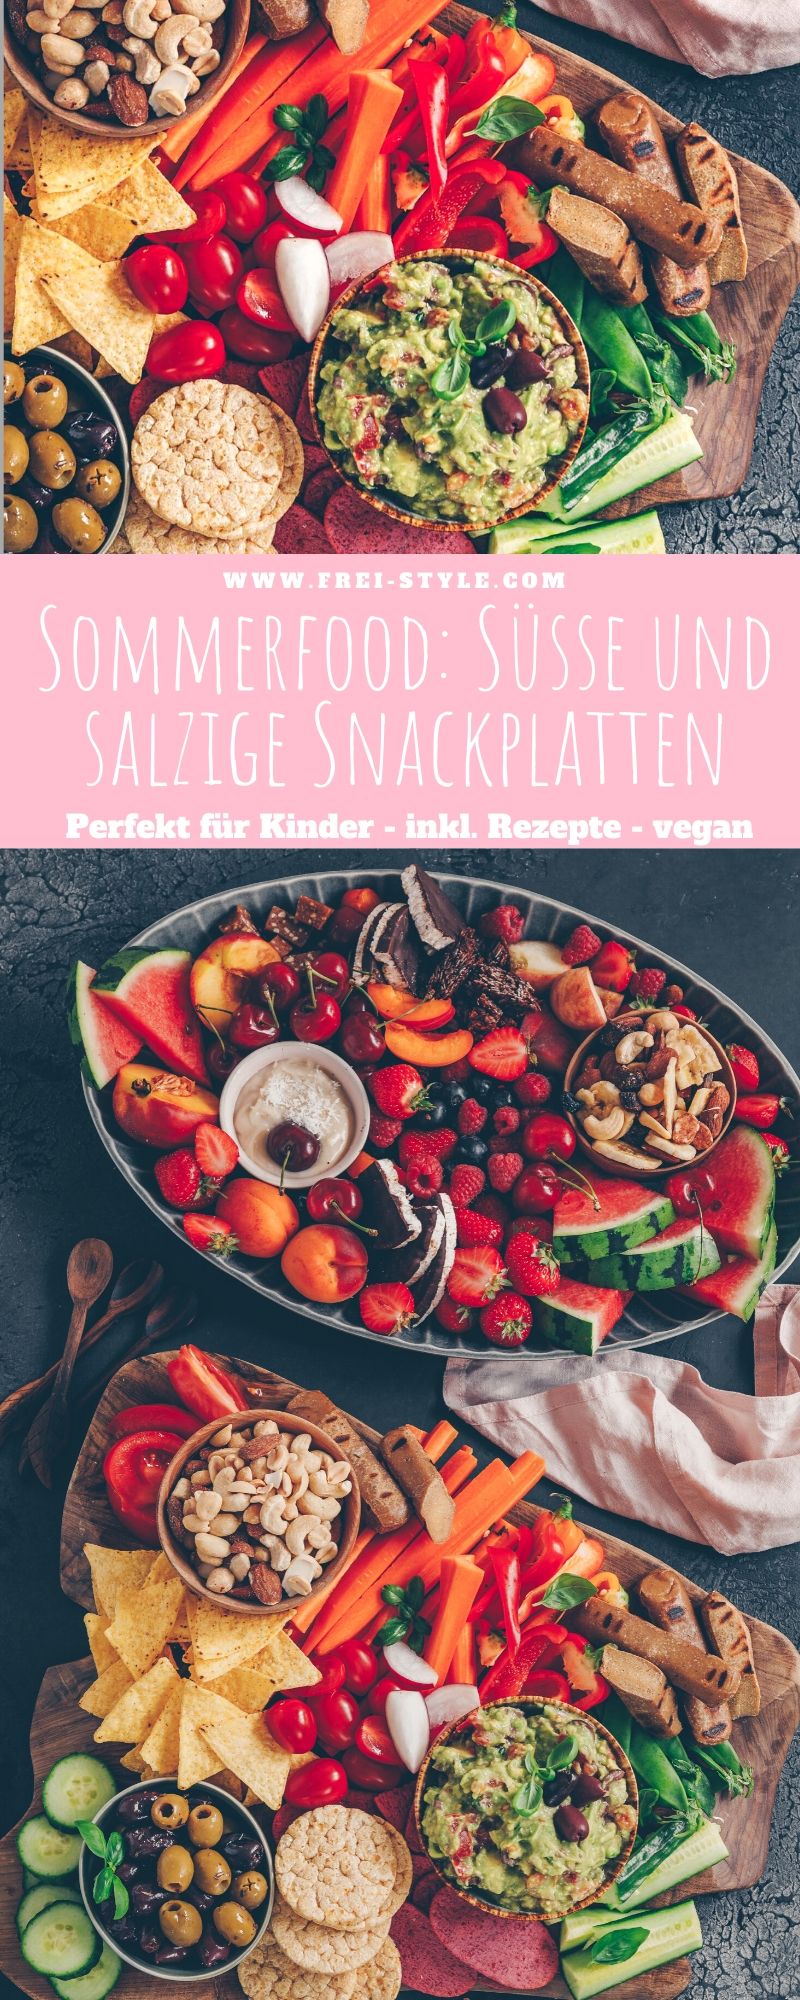 Sommerfood: Süsse und salzige Snackplatten